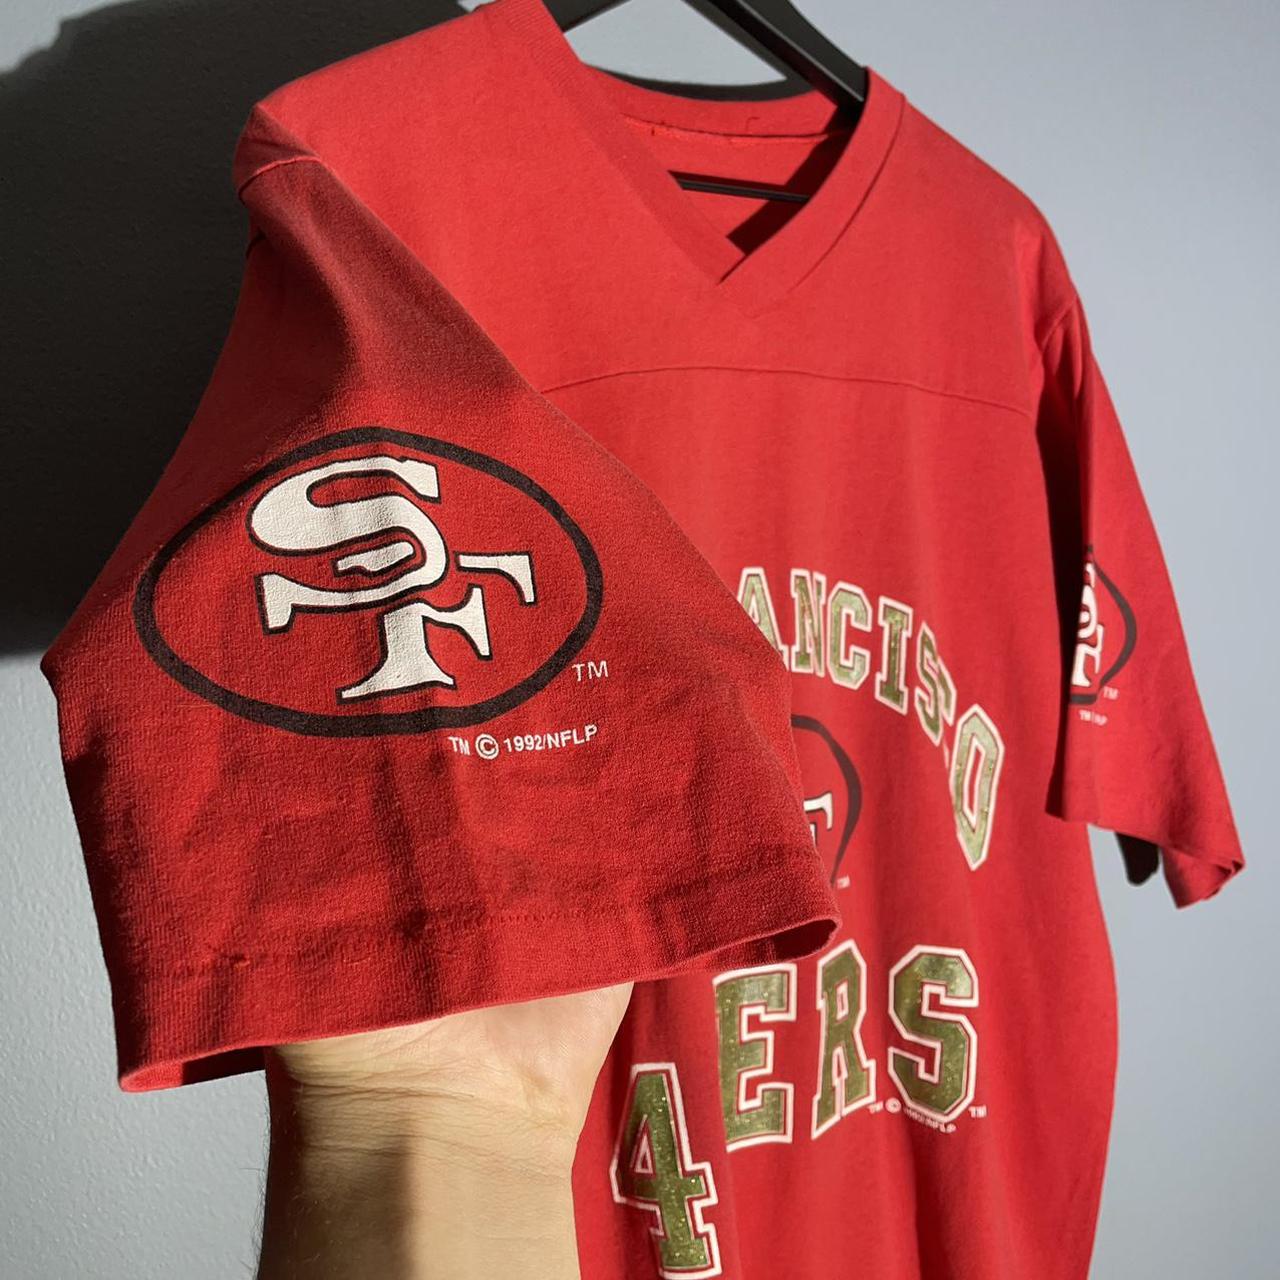 Vintage 1992 NFL San Francisco 49ers Jersey T Shirt... - Depop